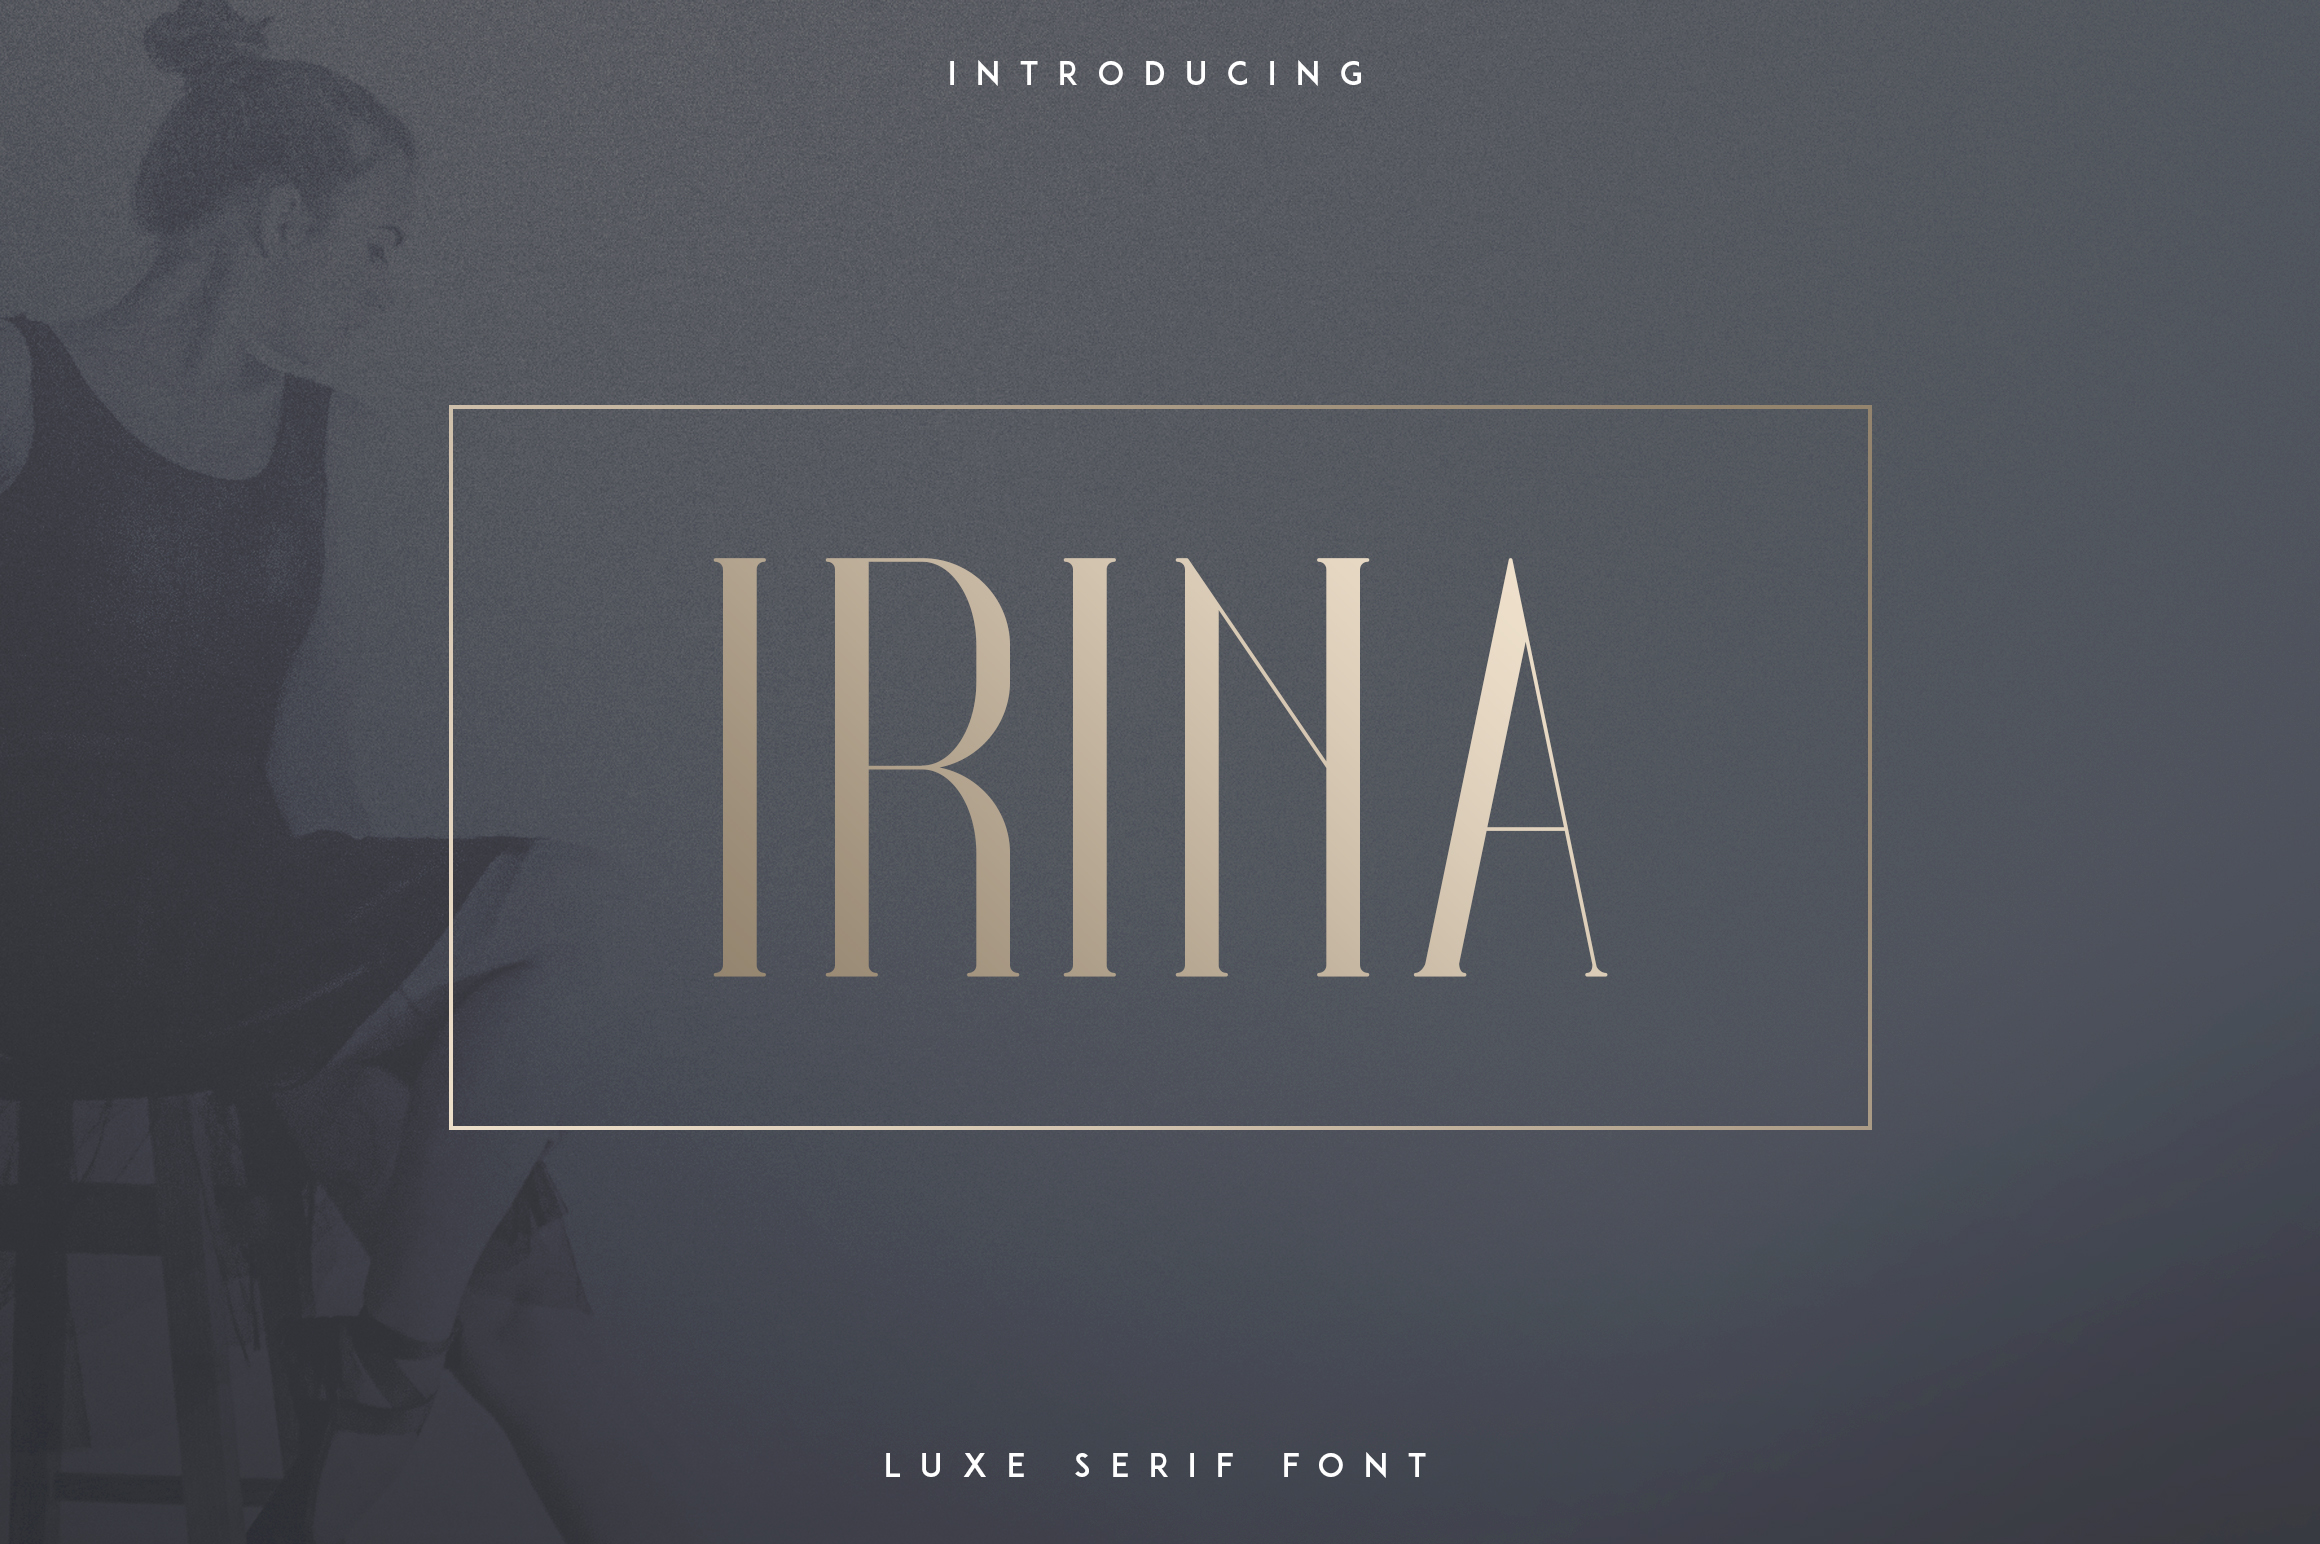 Irina